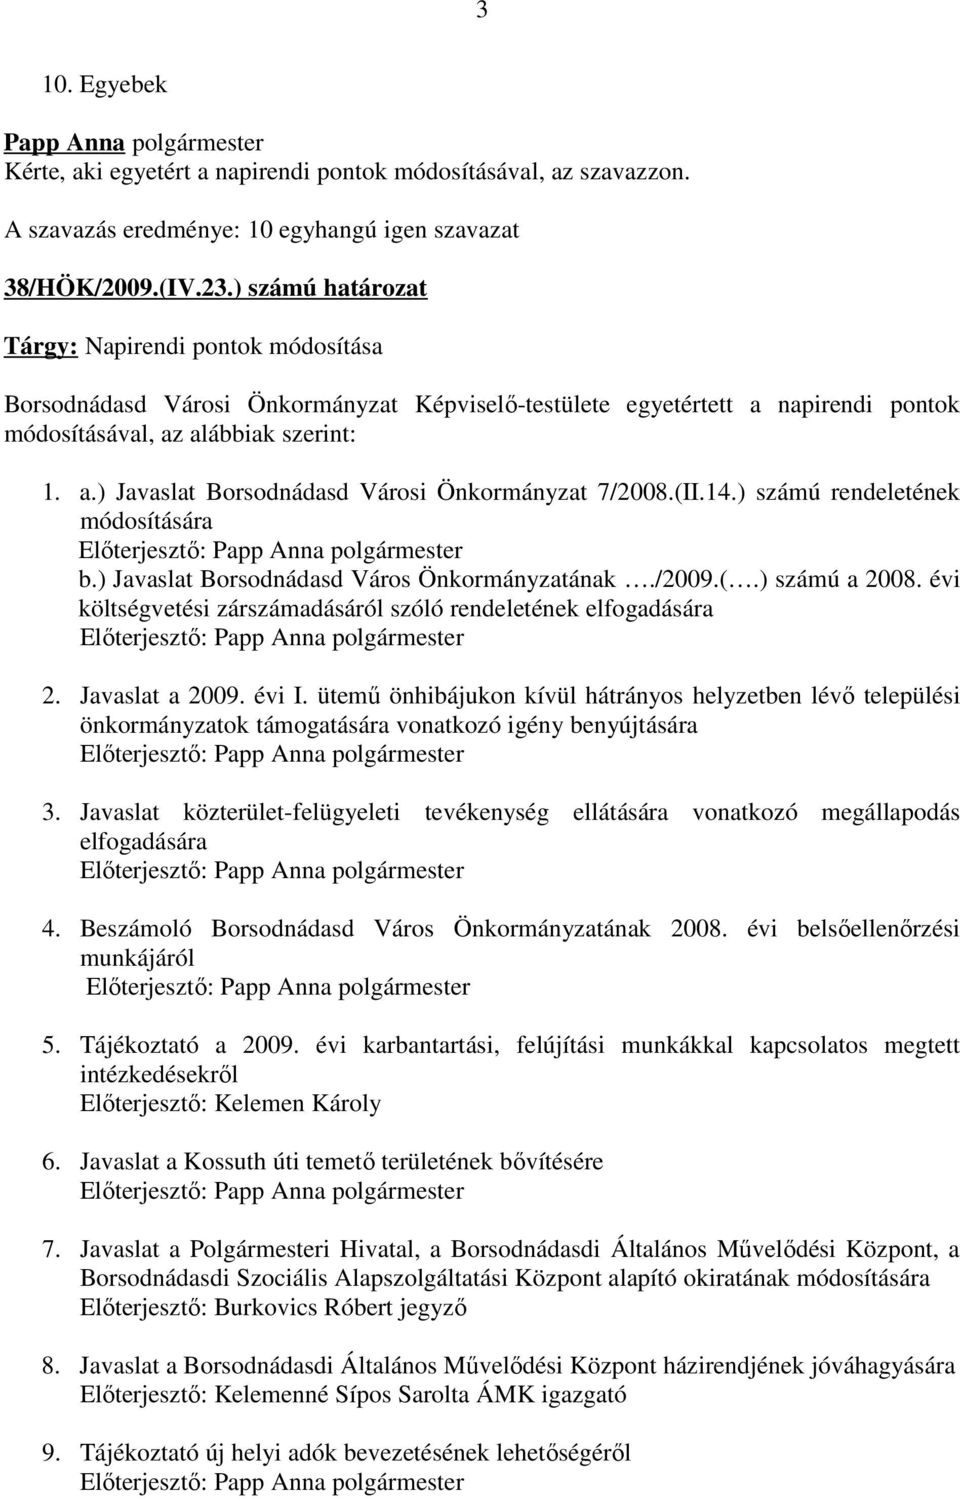 (II.14.) számú rendeletének módosítására Előterjesztő: b.) Javaslat Borsodnádasd Város Önkormányzatának./2009.(.) számú a 2008.